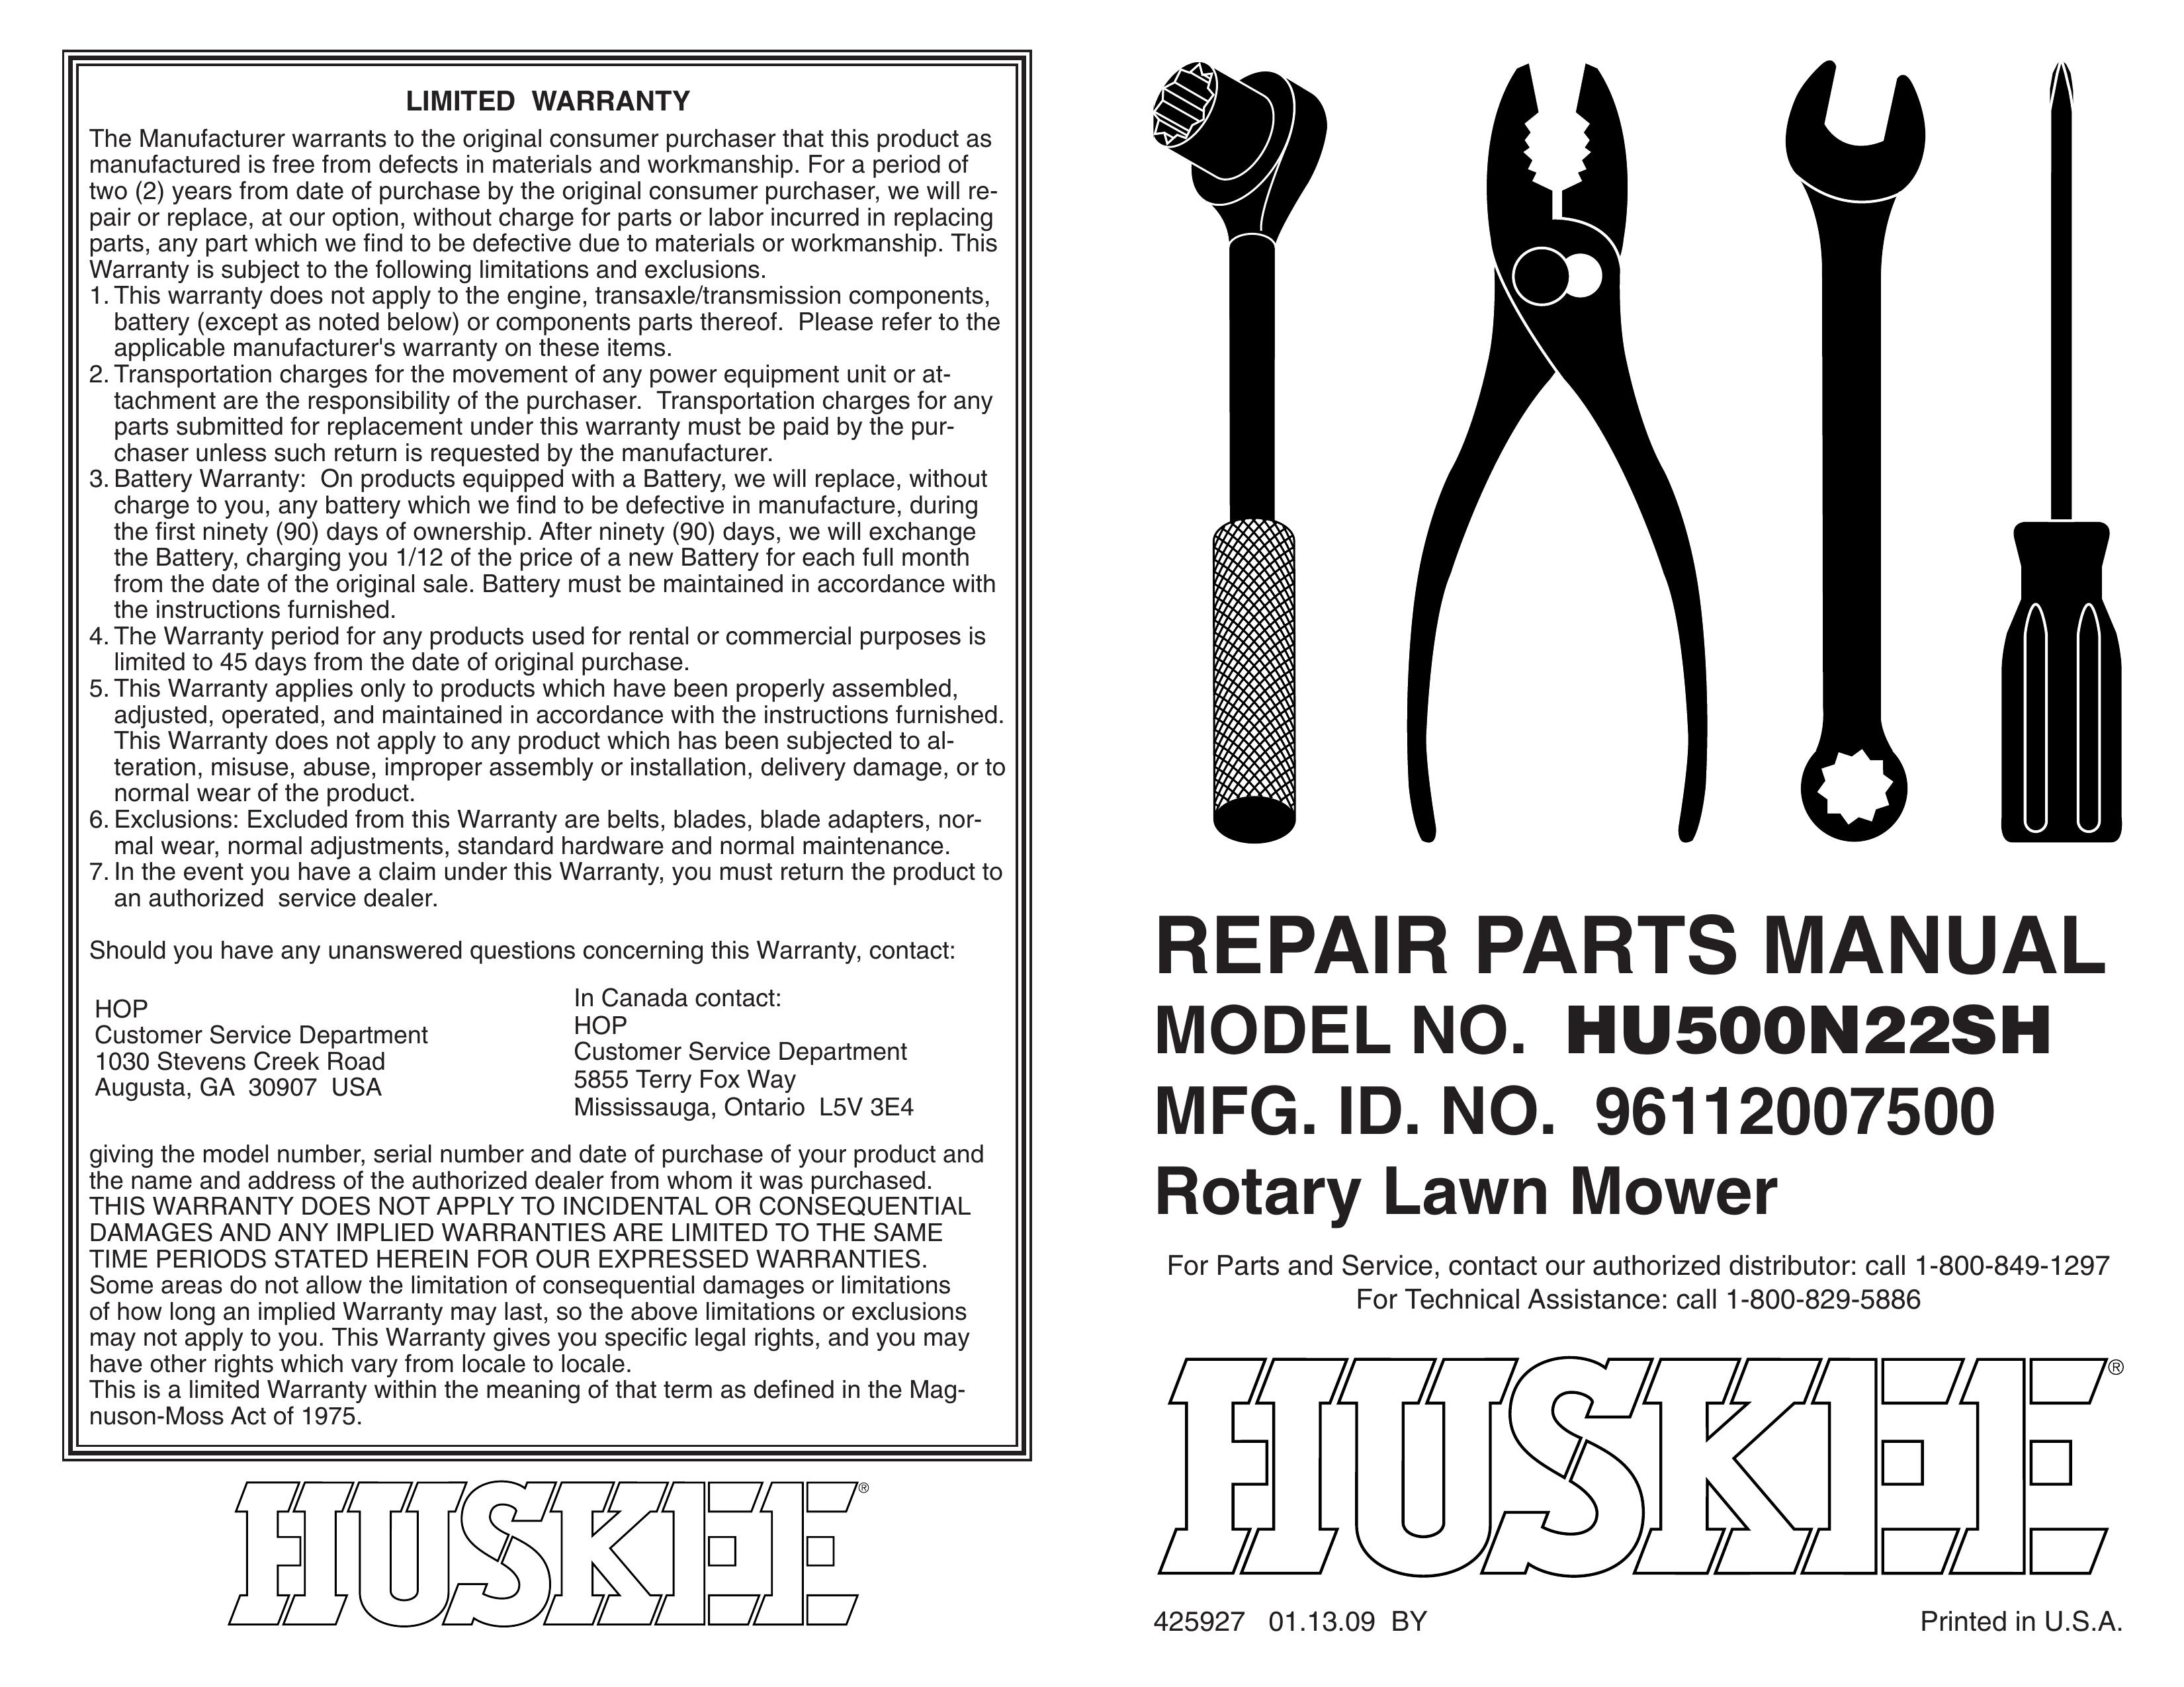 Huskee HU500N22SH Lawn Mower User Manual